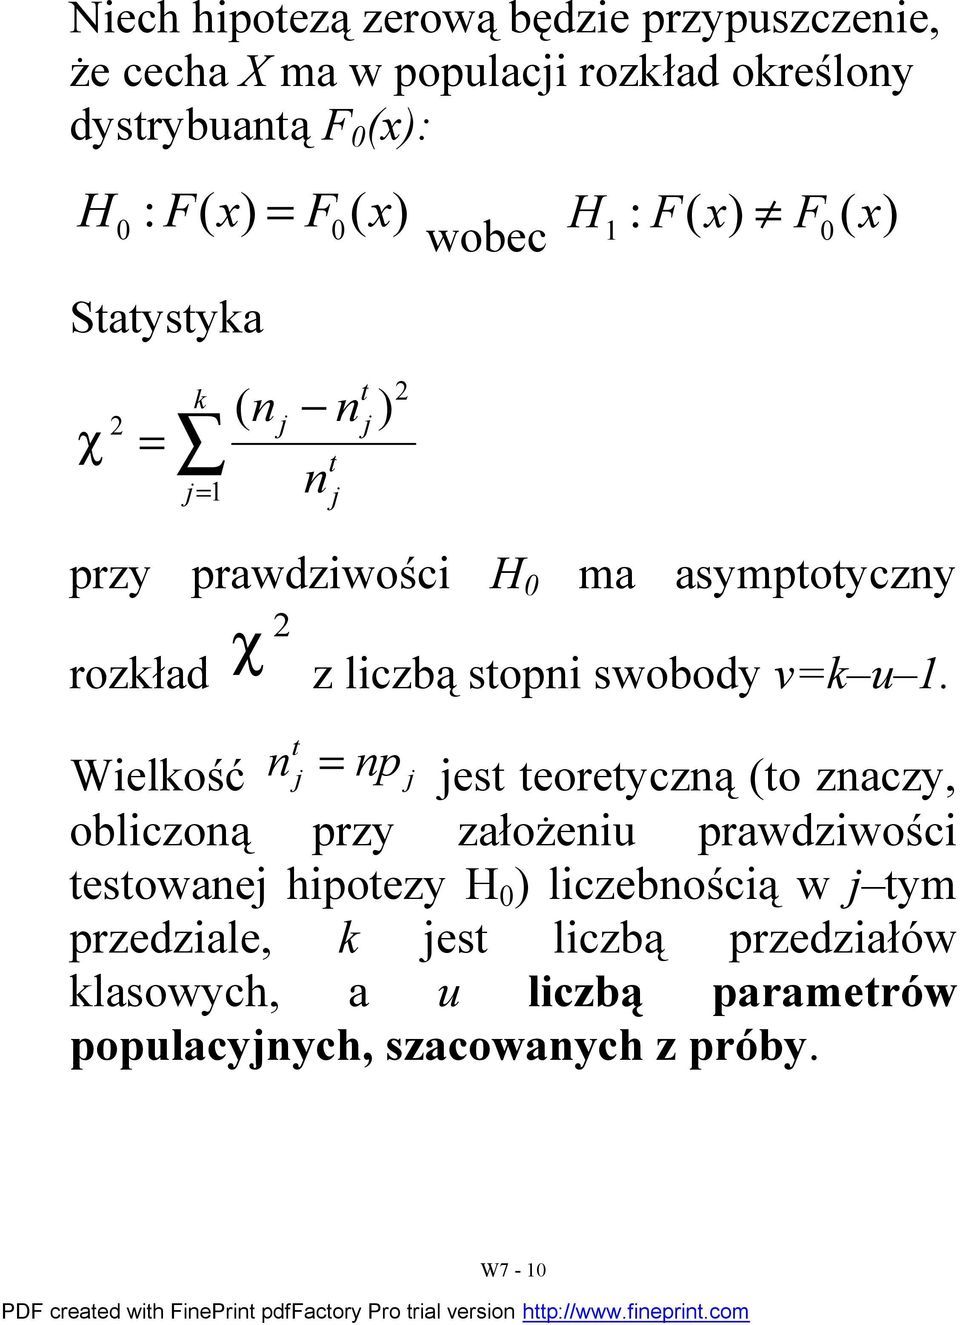 Wielkość p es eoreyczą (o zaczy, obliczoą przy założeiu prawdziwości esowae hipoezy H 0 ) liczebością w ym przedziale, k es